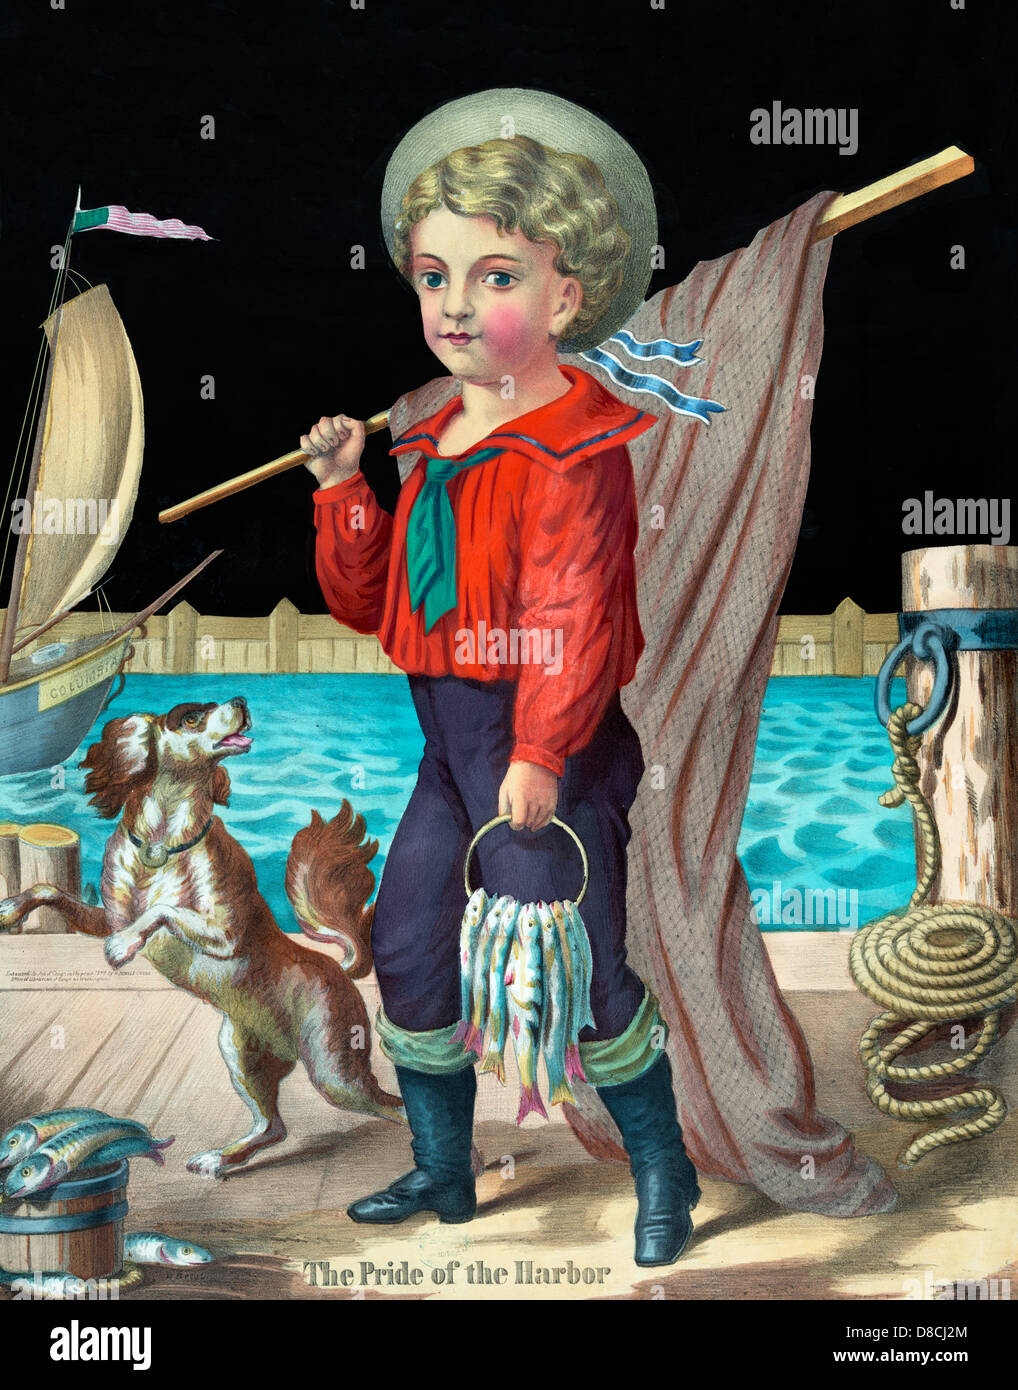 La fierté de l'Harbour - un jeune garçon, vêtu de costume de marin, marcher le long d'un quai transportant un filet de pêche et plusieurs poissons accrochés sur une large bague ; un petit chien l'accompagne, vers 1874 Banque D'Images